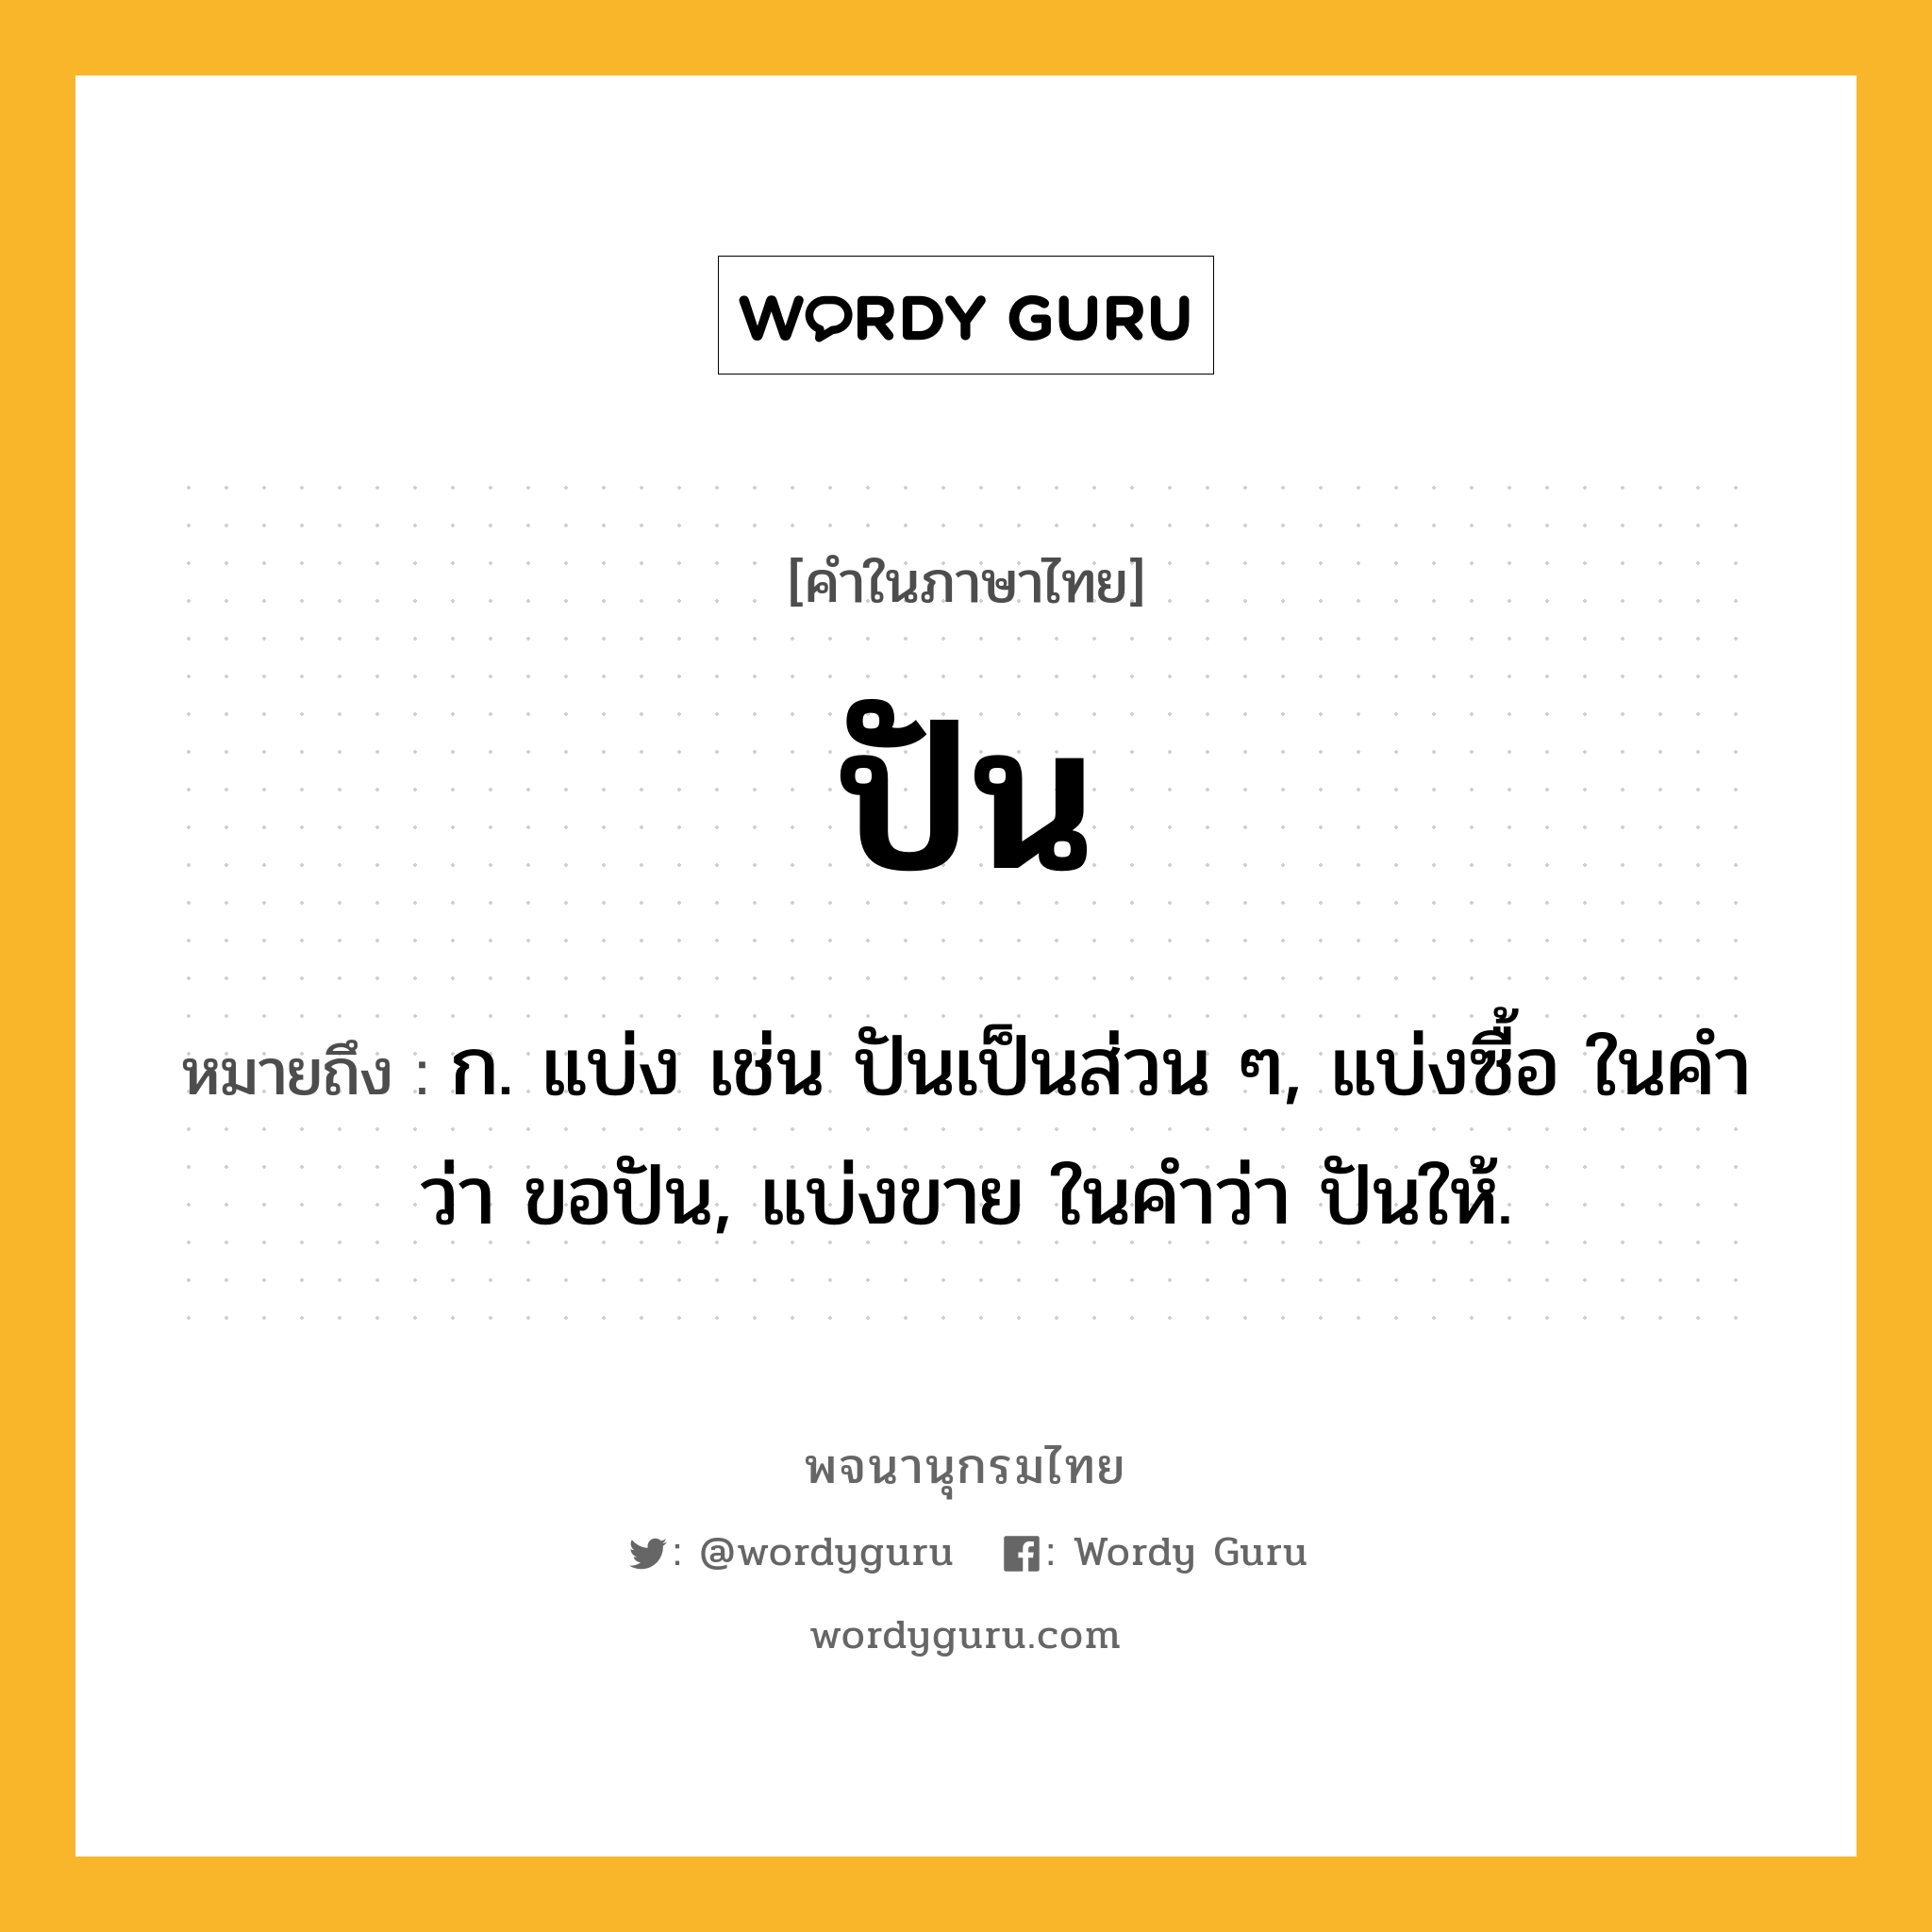 ปัน หมายถึงอะไร?, คำในภาษาไทย ปัน หมายถึง ก. แบ่ง เช่น ปันเป็นส่วน ๆ, แบ่งซื้อ ในคำว่า ขอปัน, แบ่งขาย ในคำว่า ปันให้.